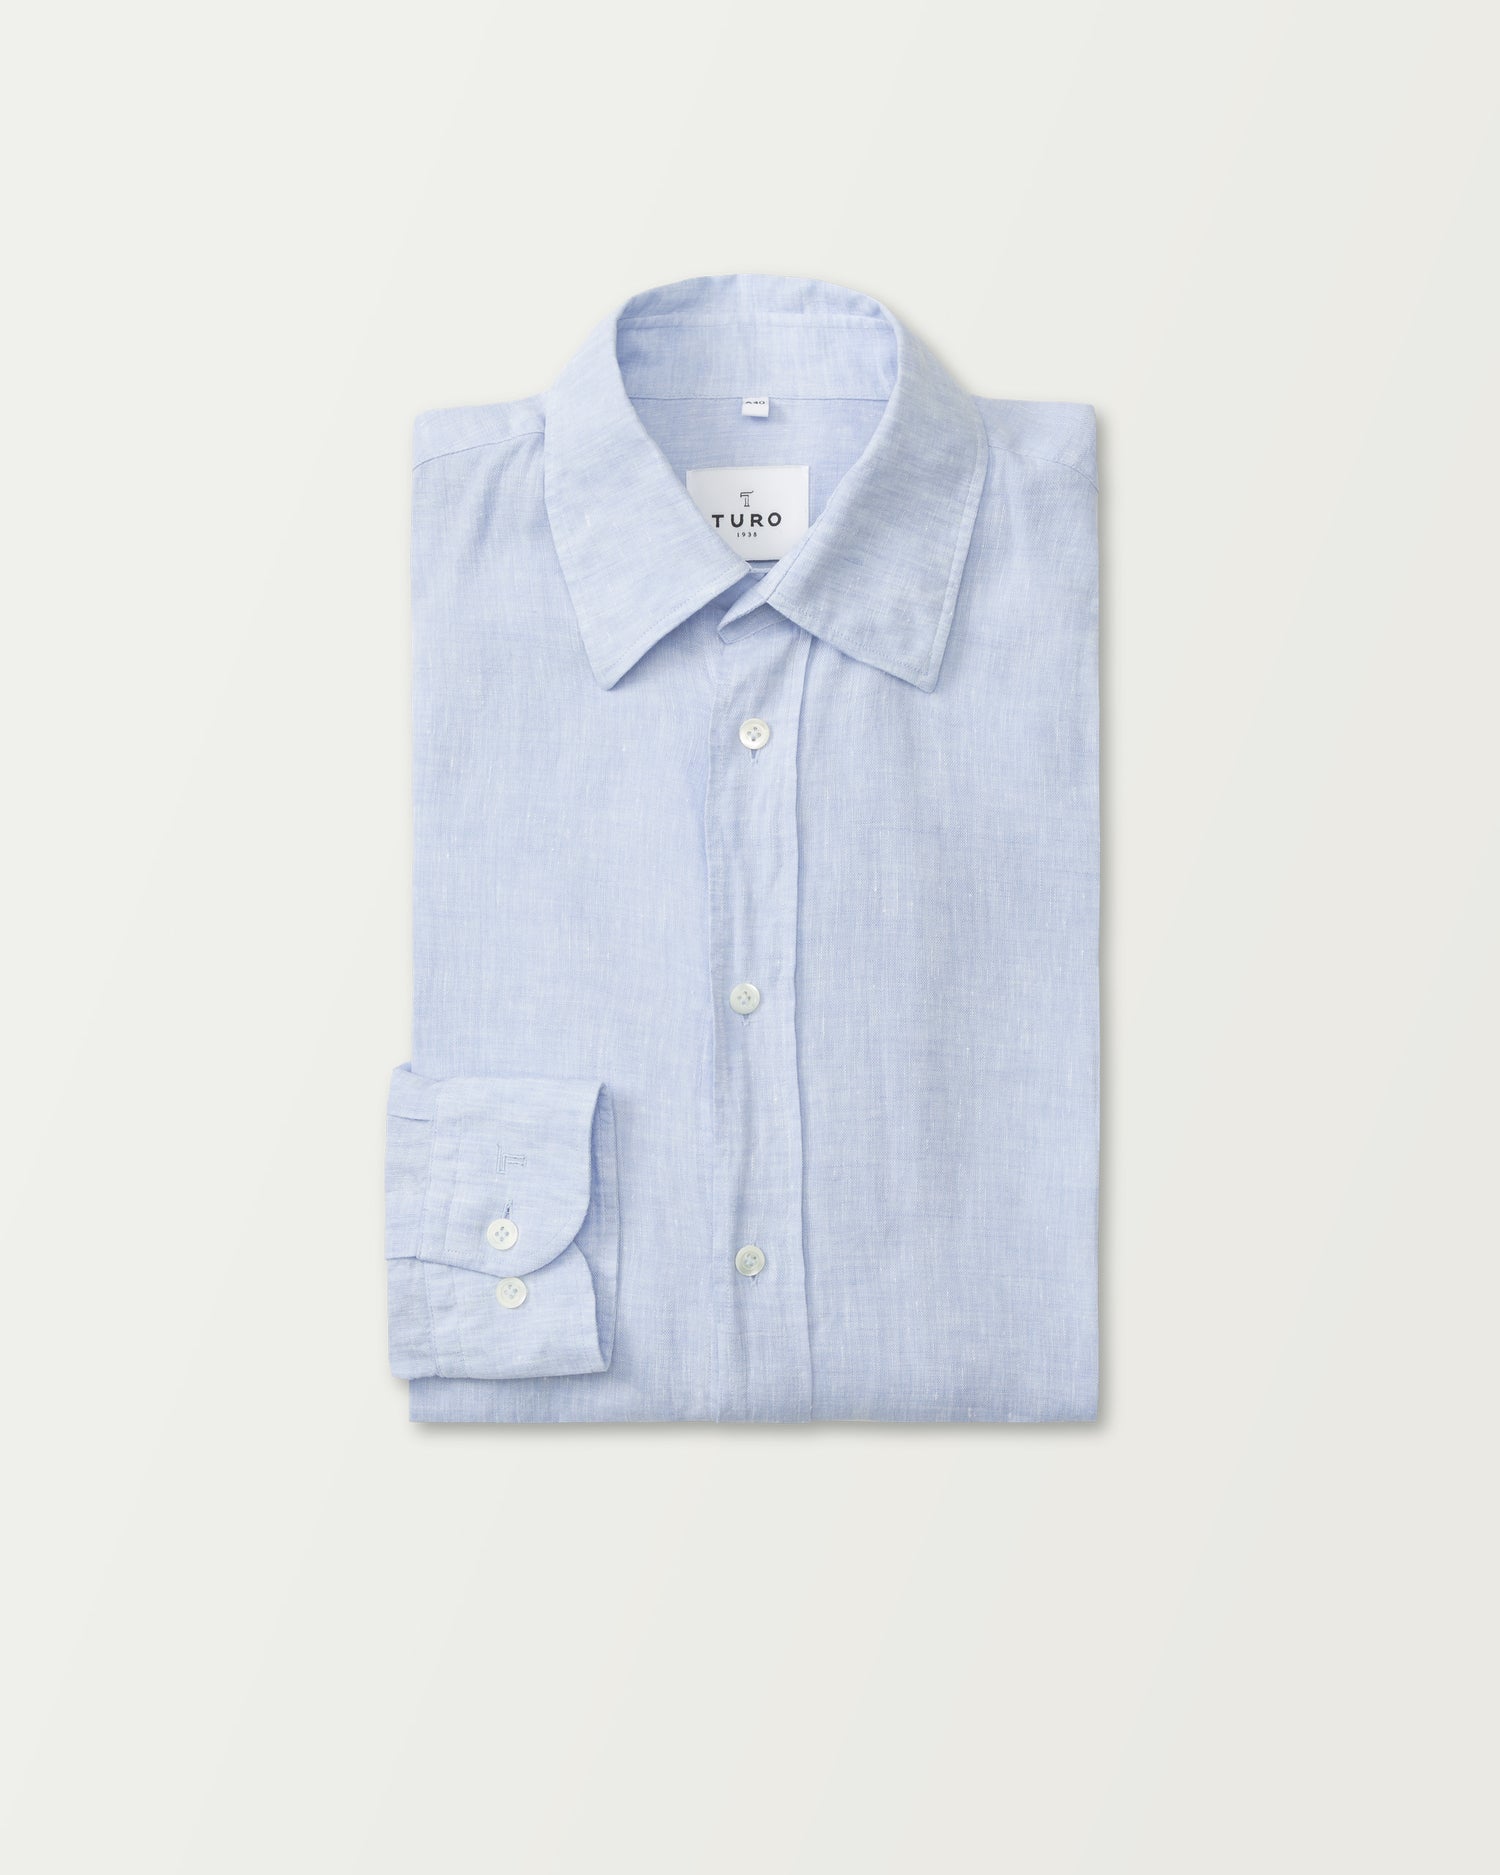 Summer Shirt in Light Blue Linen (8669648093514)